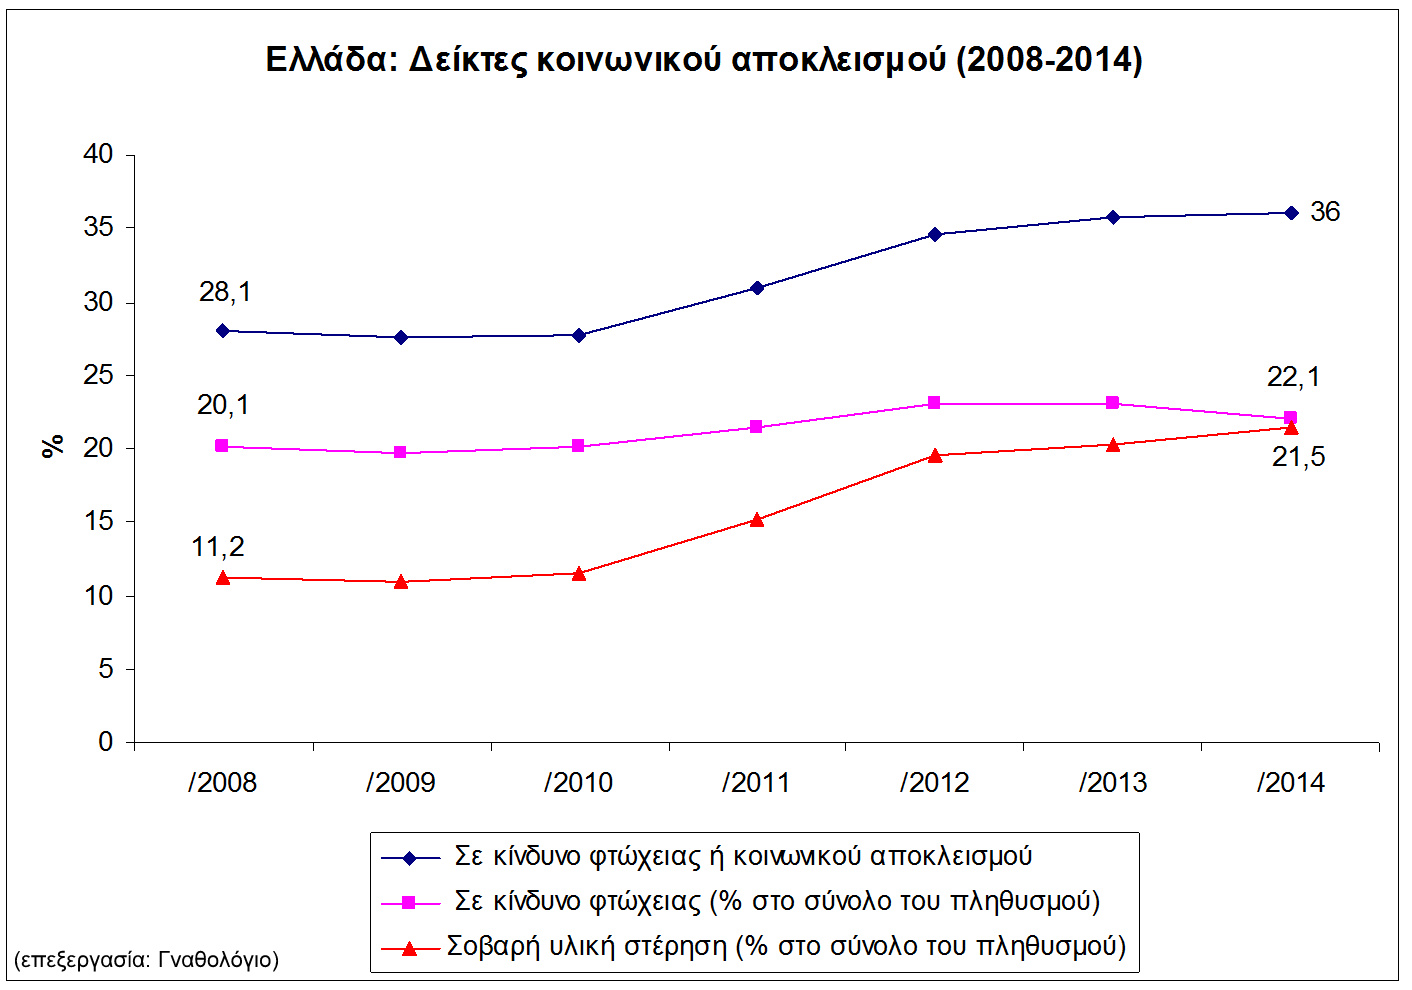 Γράφημα 1: Δείκτες κοινωνικού αποκλεισμού στην Ελλάδα από 2008-2014 (Στοιχεία eurostat)